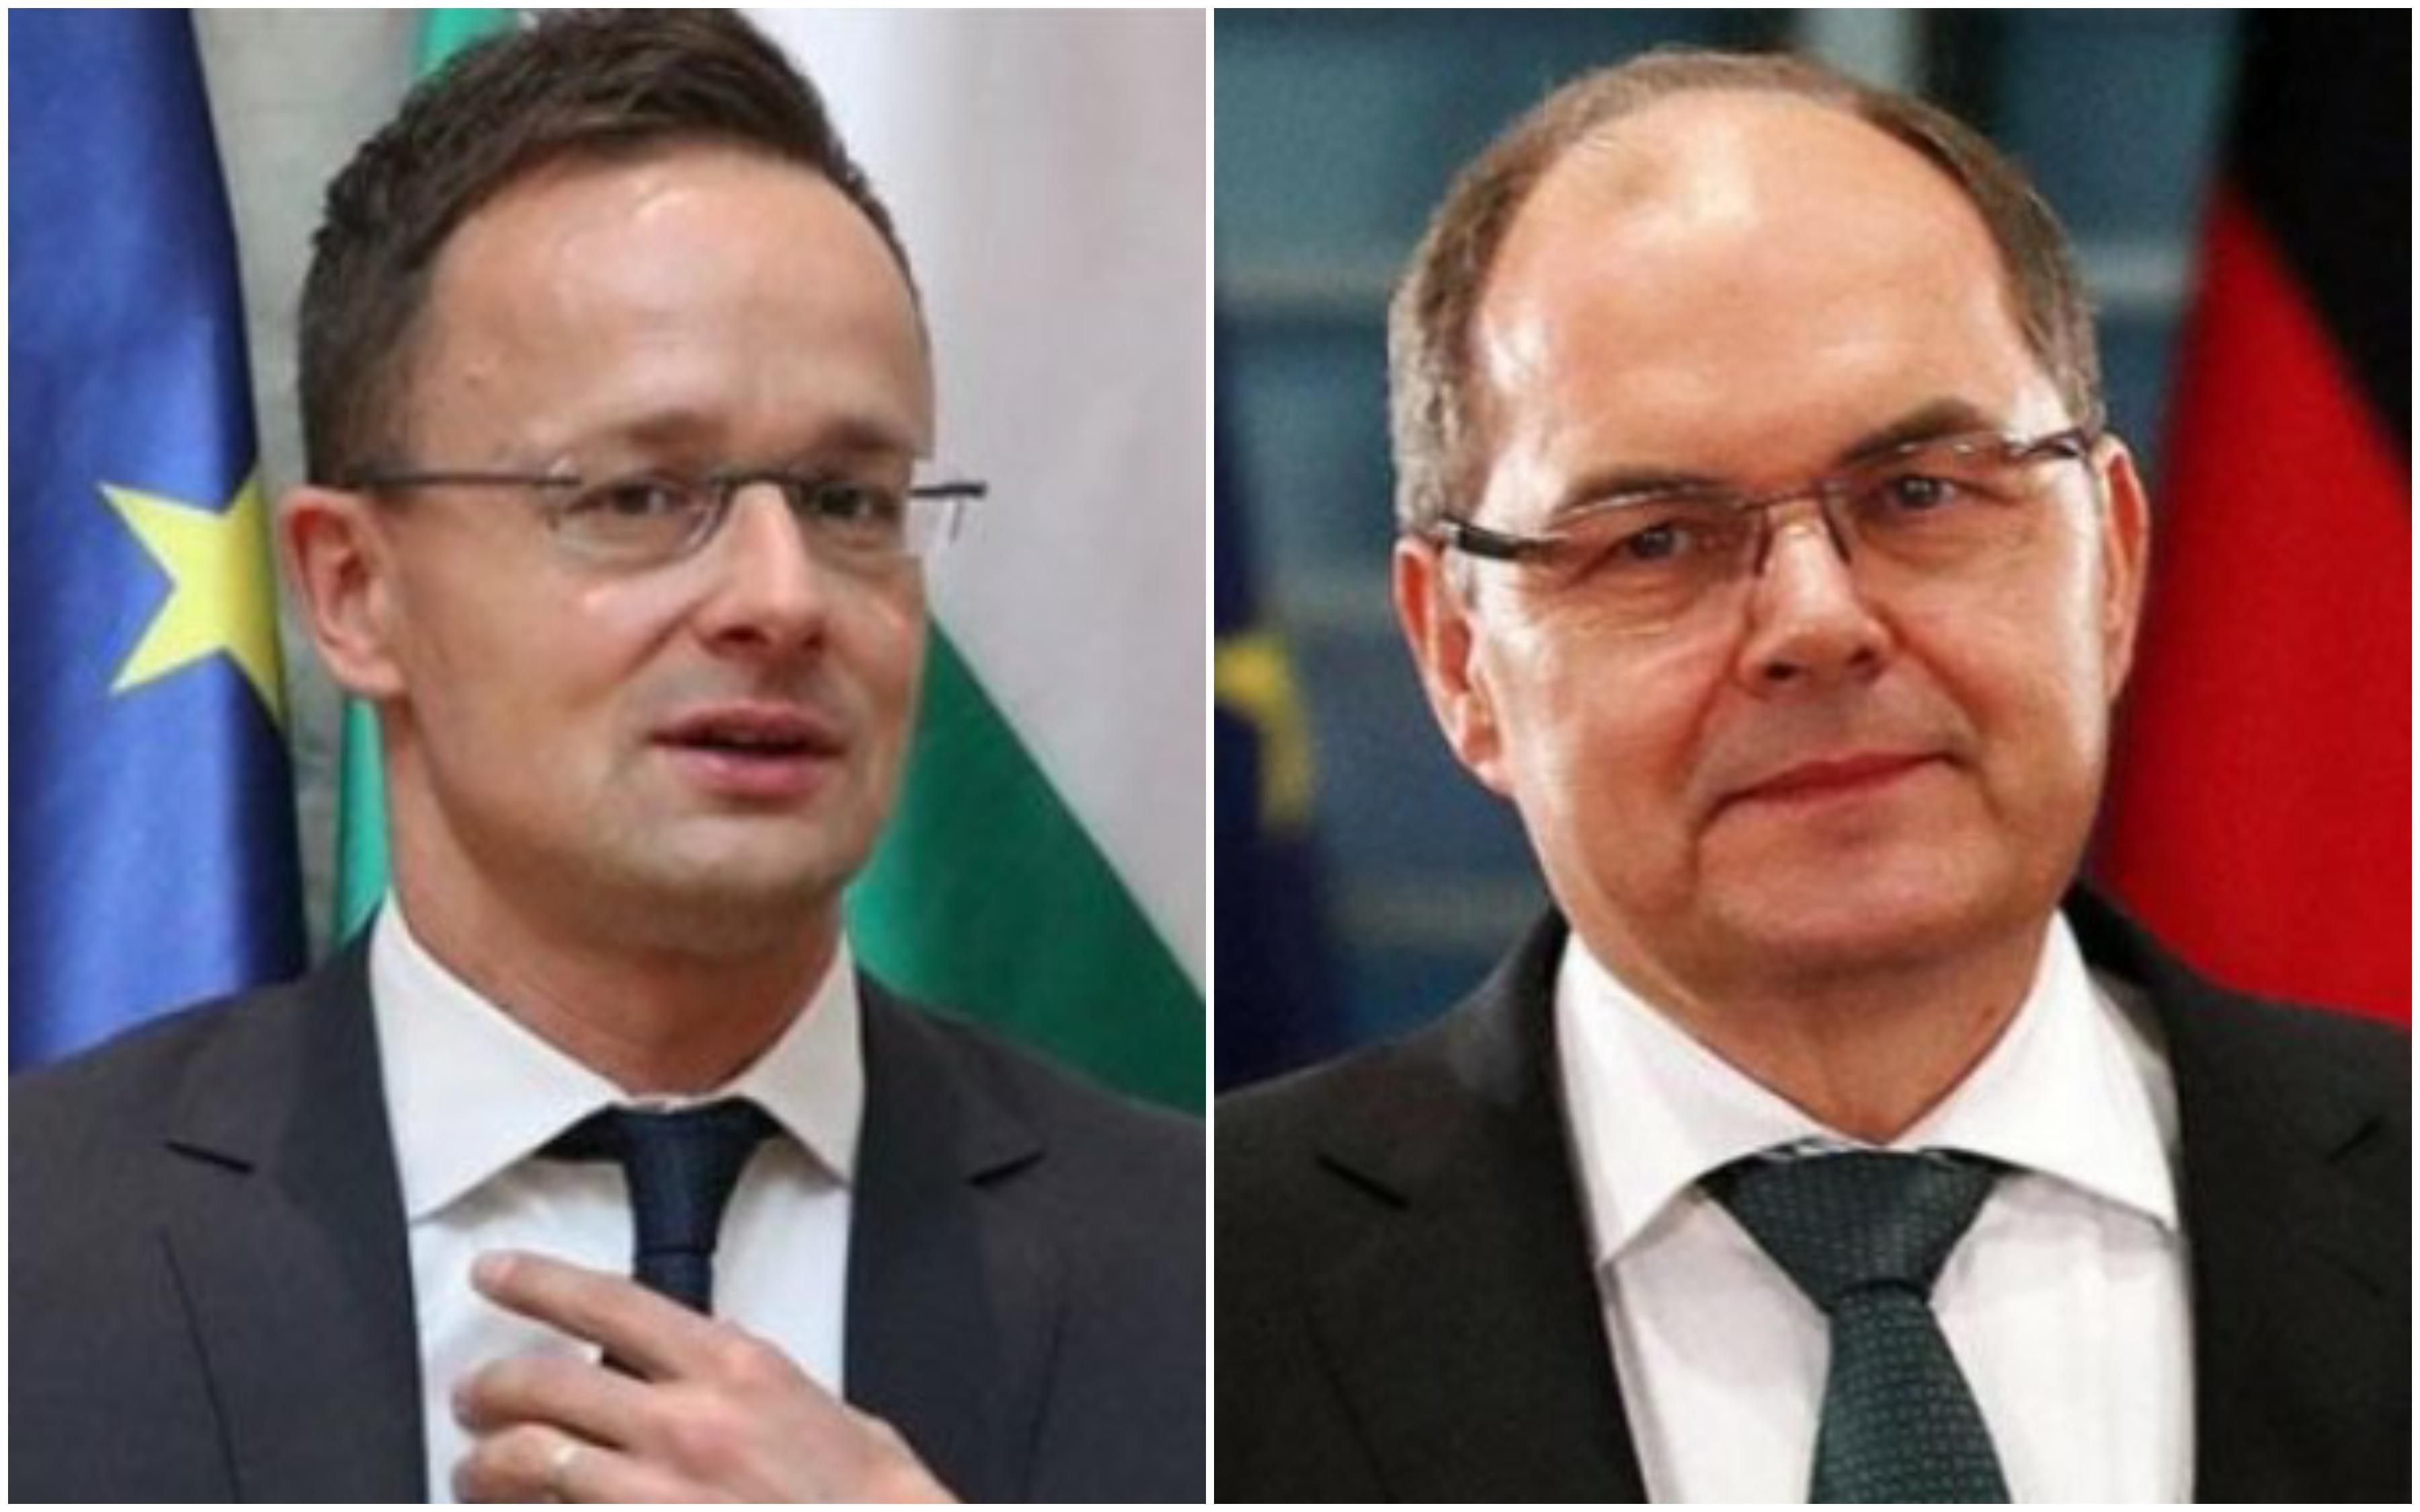 Sijarto nakon razgovora sa Šmitom: BiH igra ključnu ulogu u regiji, Mađarska ne vidi smisla u prijetnjama uvođenjem sankcija